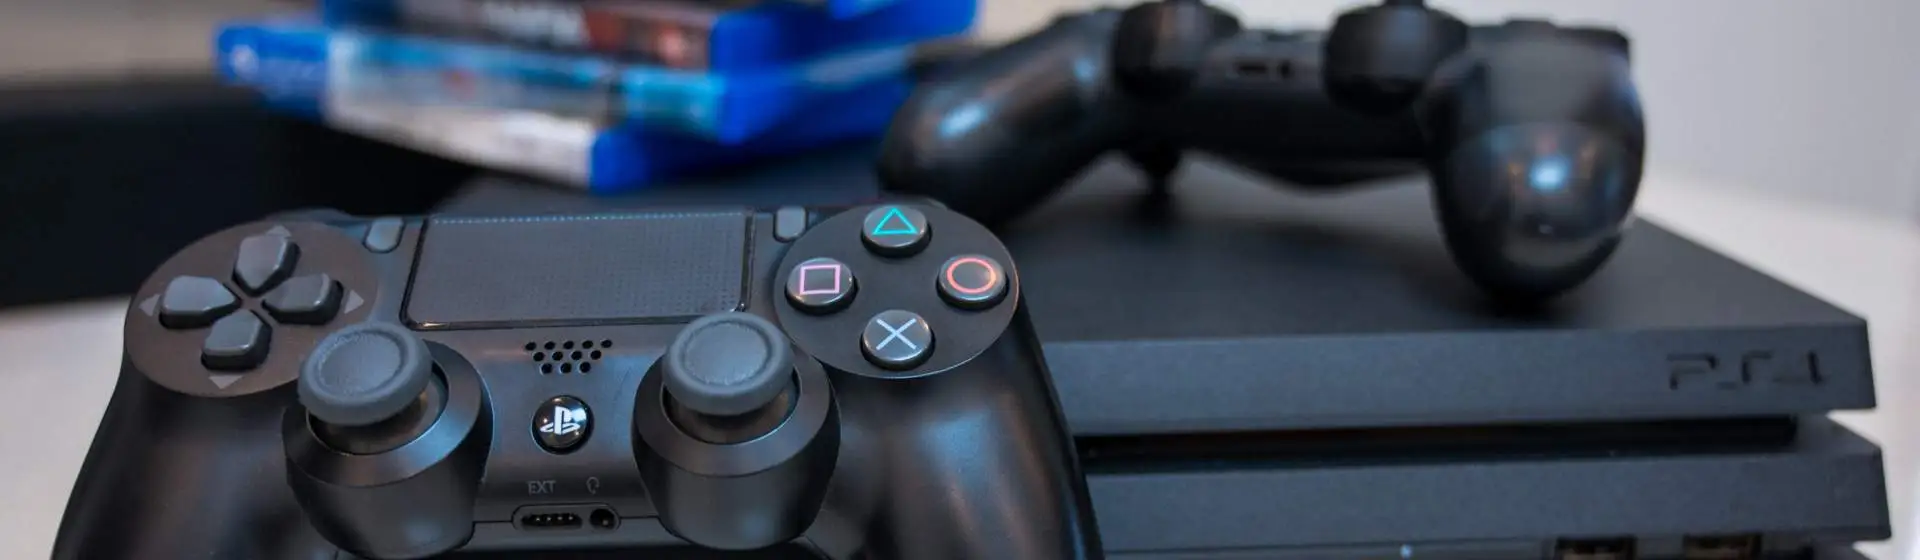 PS4 Pro: preço, análise e tudo que você precisa saber sobre ele